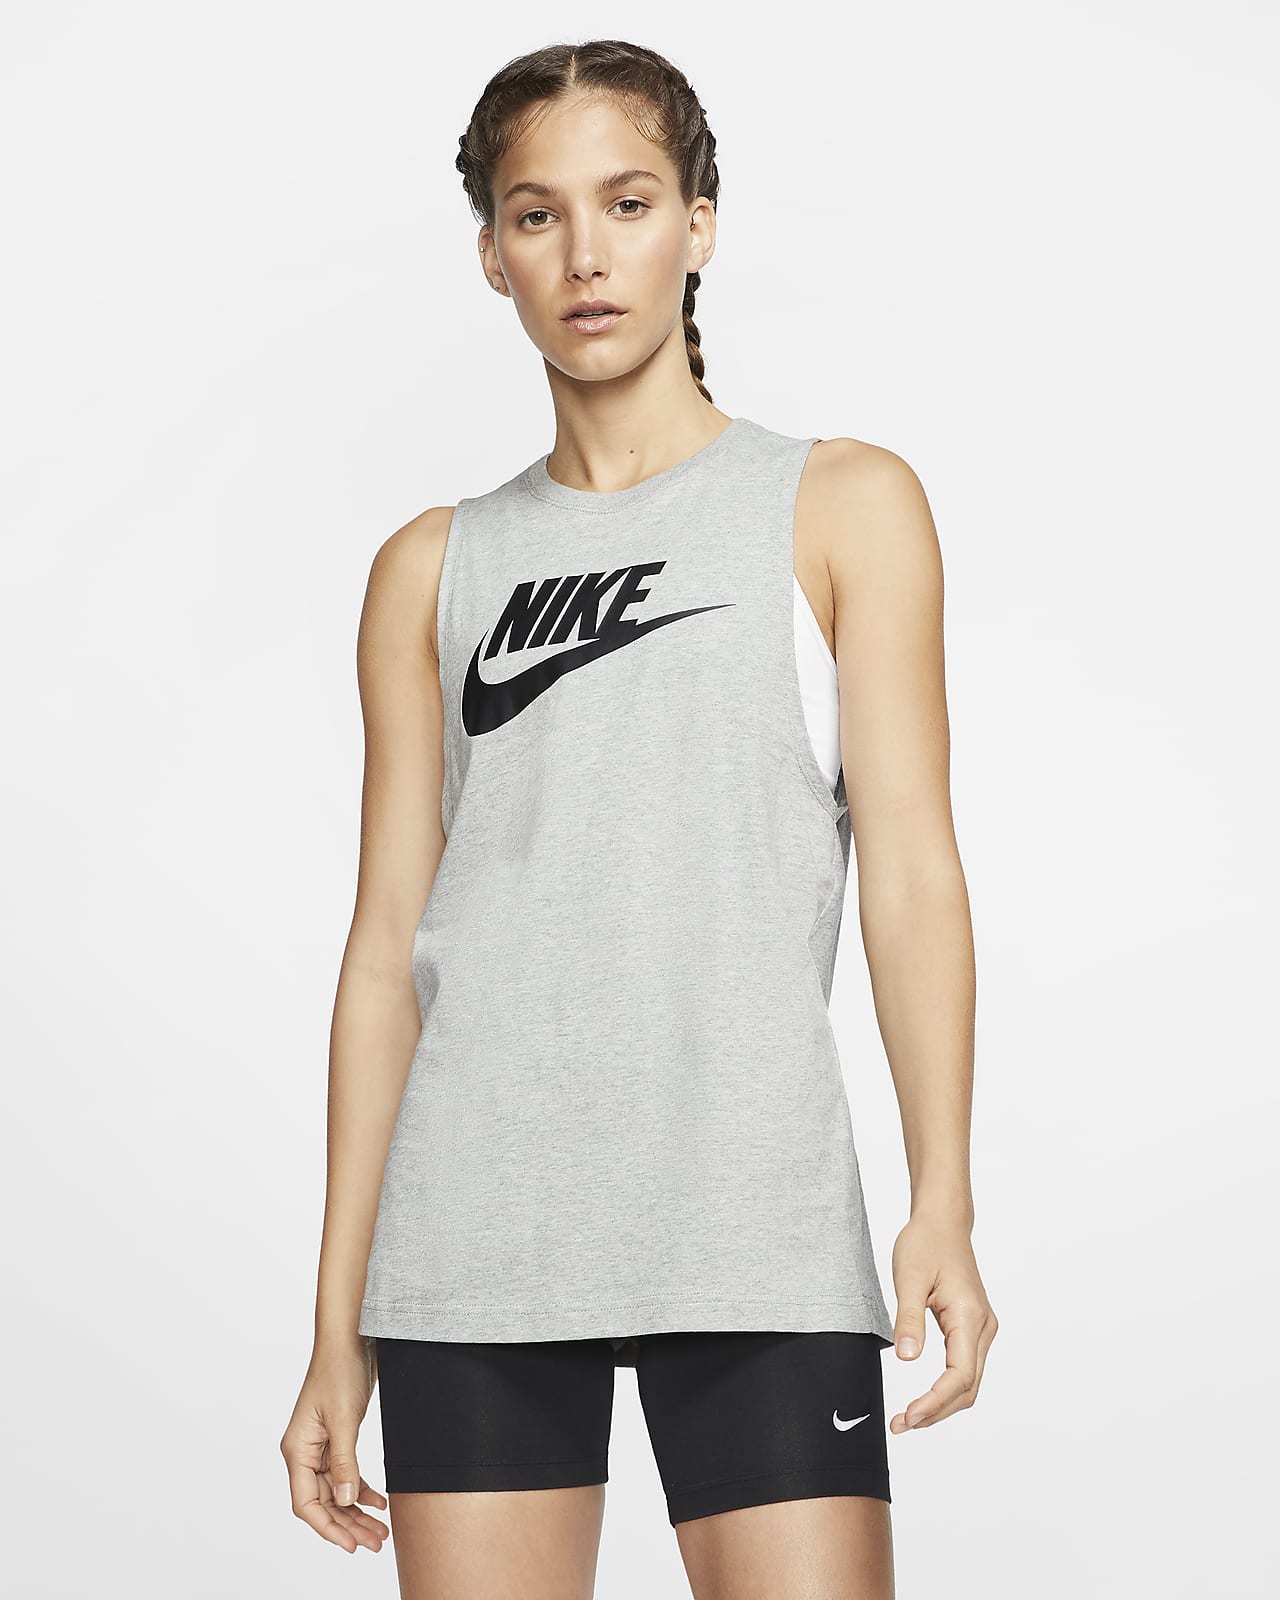 Nike Sportswear Women's Muscle Tank.